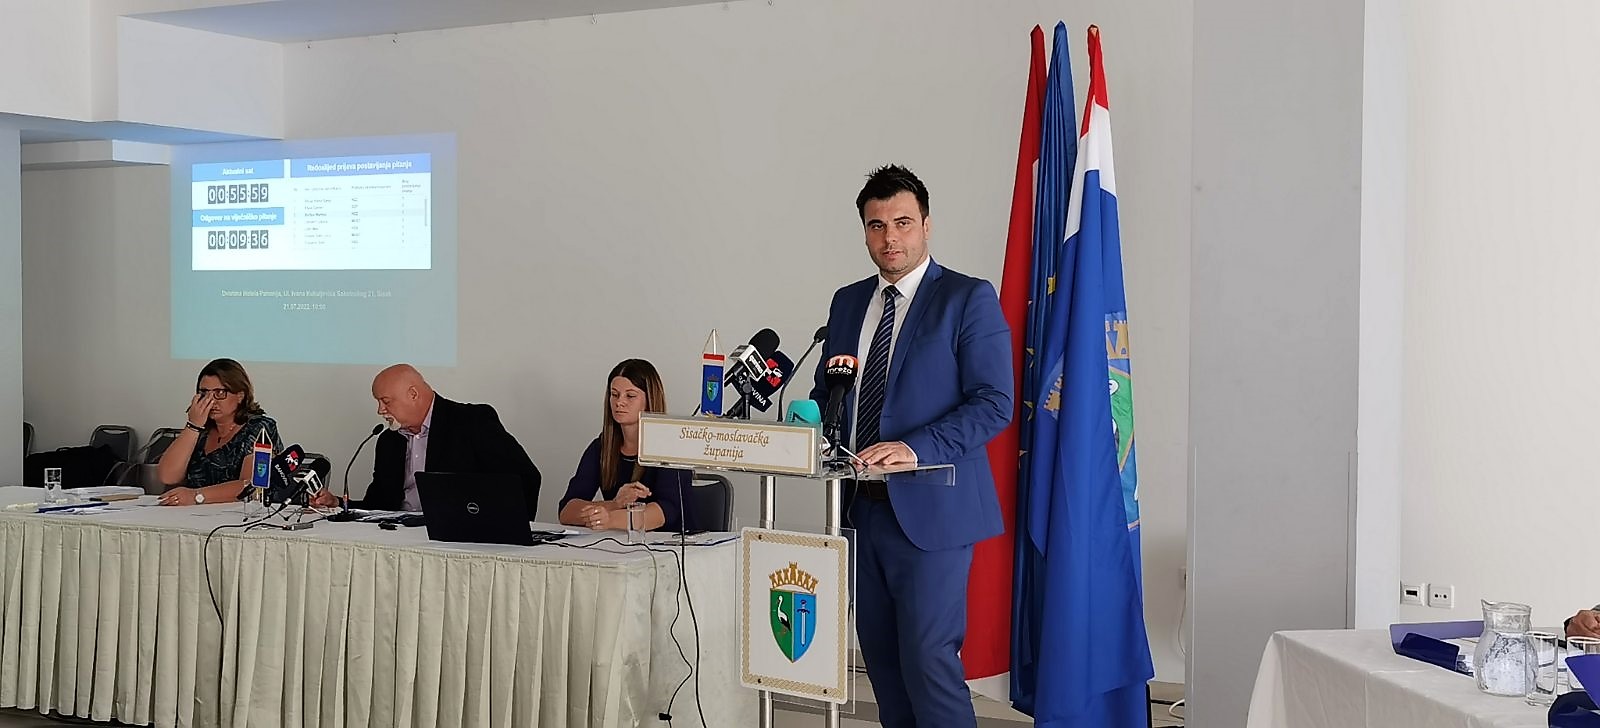 Održana je 9. sjednica Županijske skupštine Sisačko-moslavačke županije na kojoj je glavni fokus usmjeren na pitanja obnove zgrada javne namjene u vlasništvu Županije te onih u vlasništvu ustanova kojima je osnivač Županija.